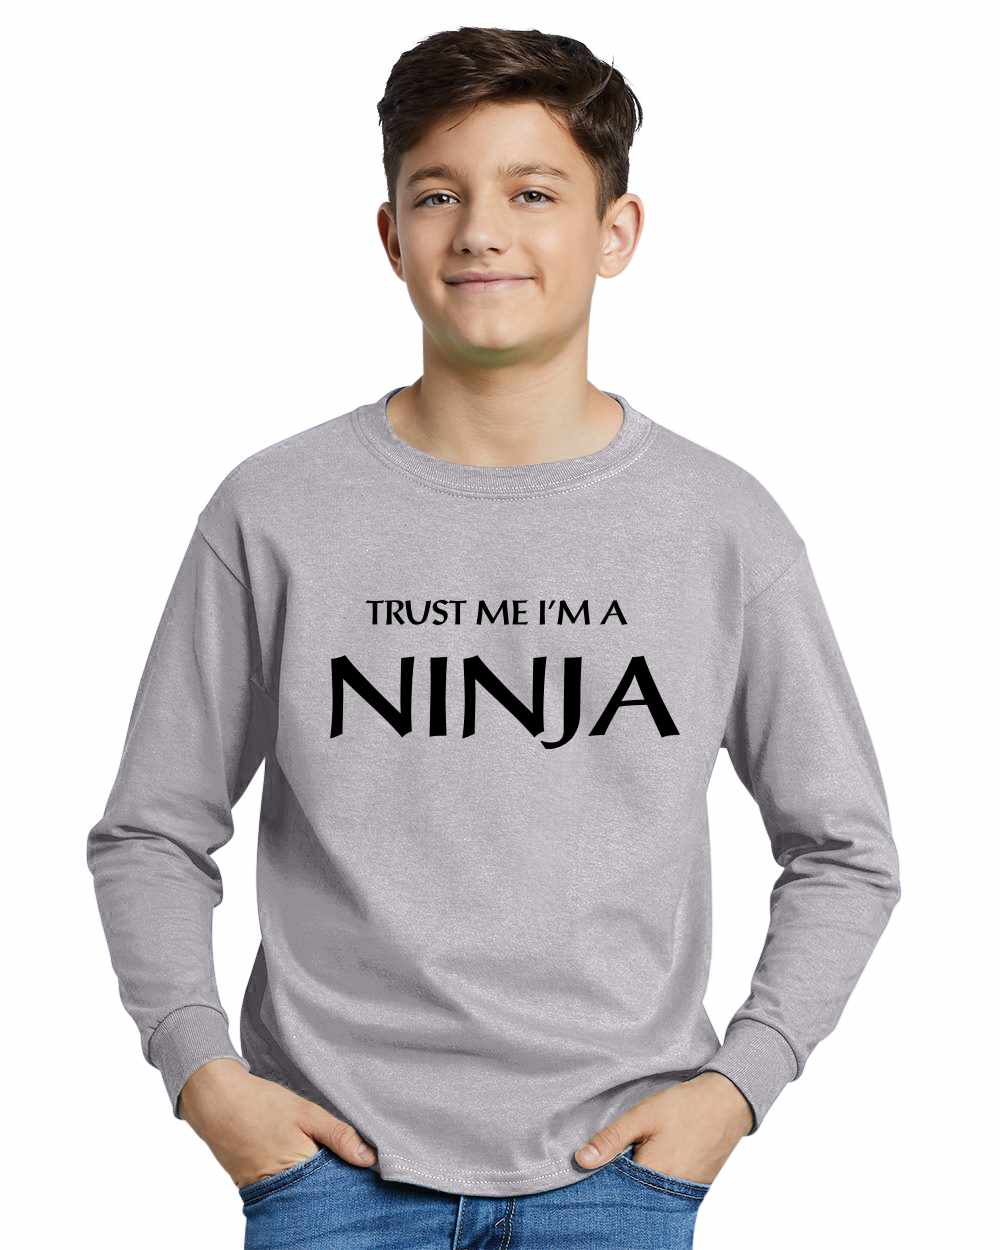 Trust Me I'm a NINJA on Youth Long Sleeve Shirt